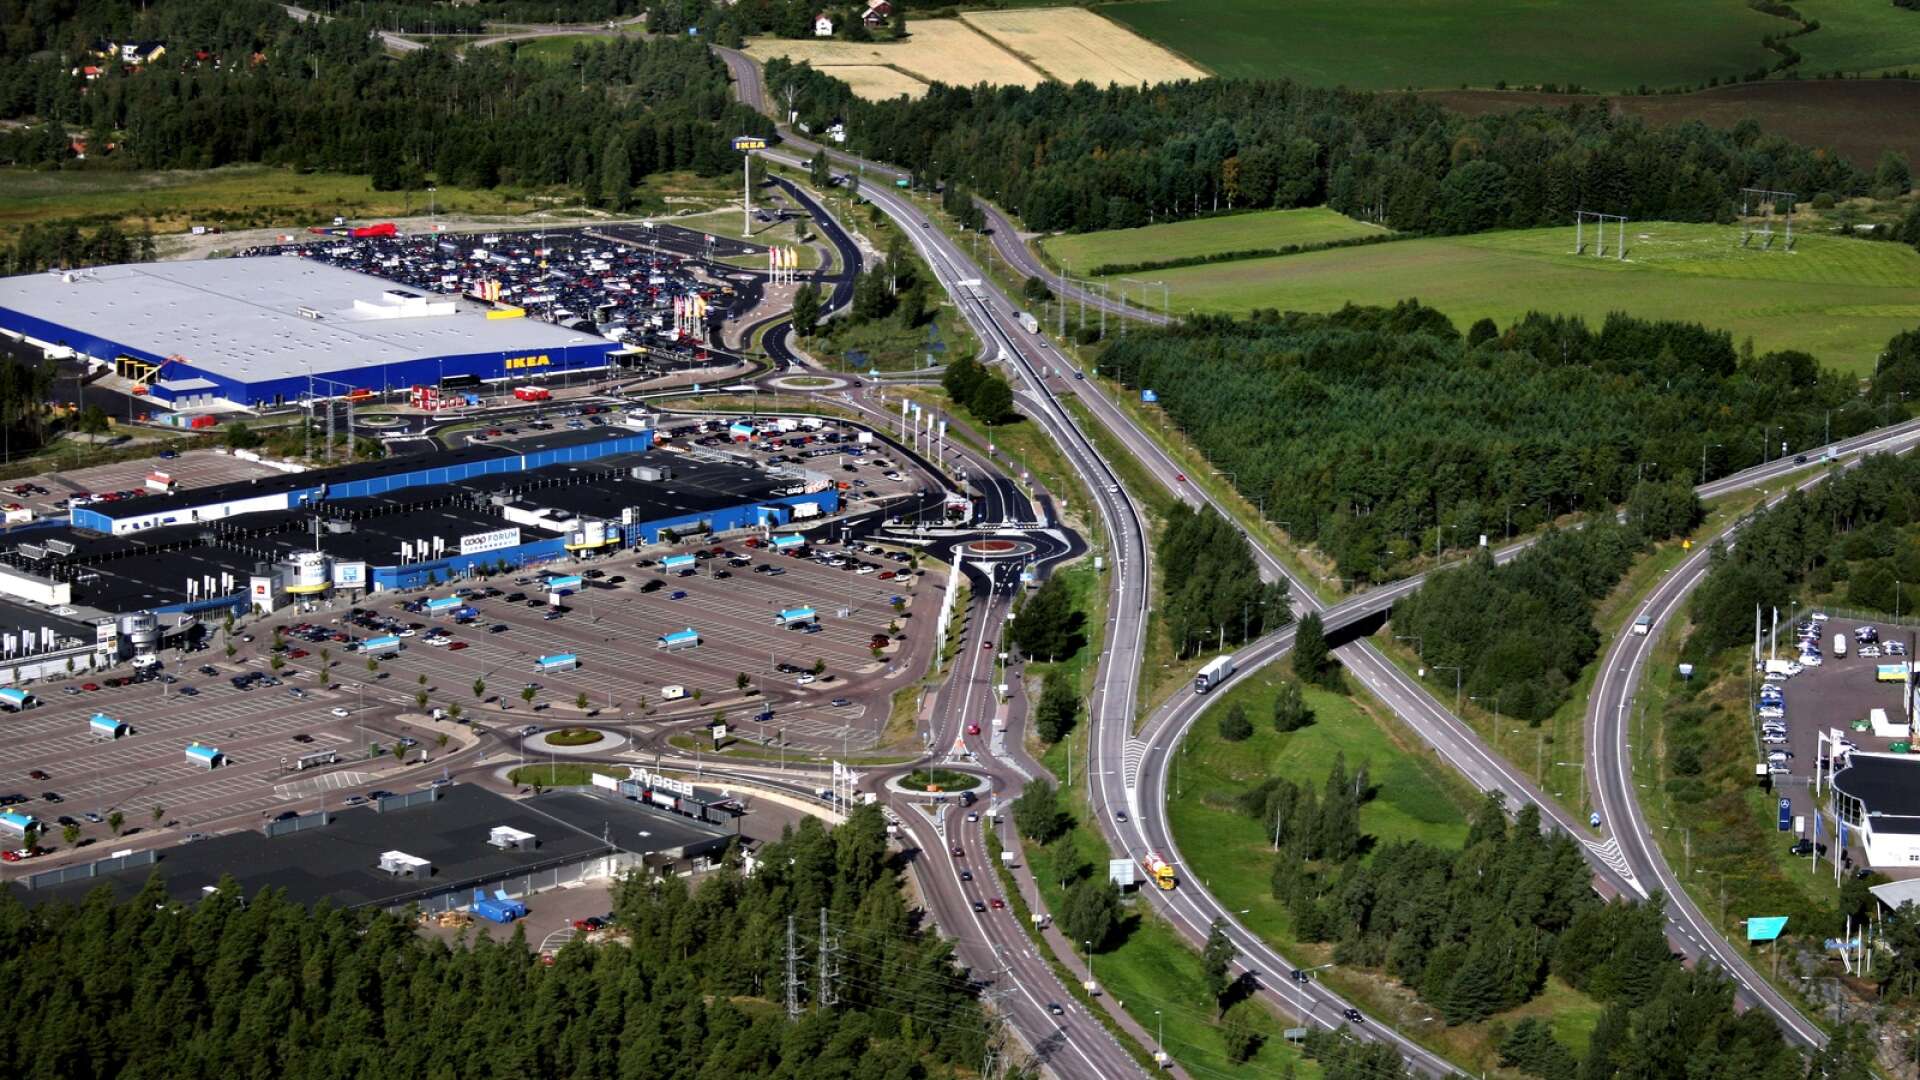 Företaget Calluna har fått uppdraget av Karlstads kommun att kartlägga hur mycket fladdermöss det finns på Eriksberg på nordsidan av E18 vid Bergvik. Anledningen är att Karlstads nya stora industriområde ska byggas där. Prislappen för undersökningen hamnar på 315 000 kronor.